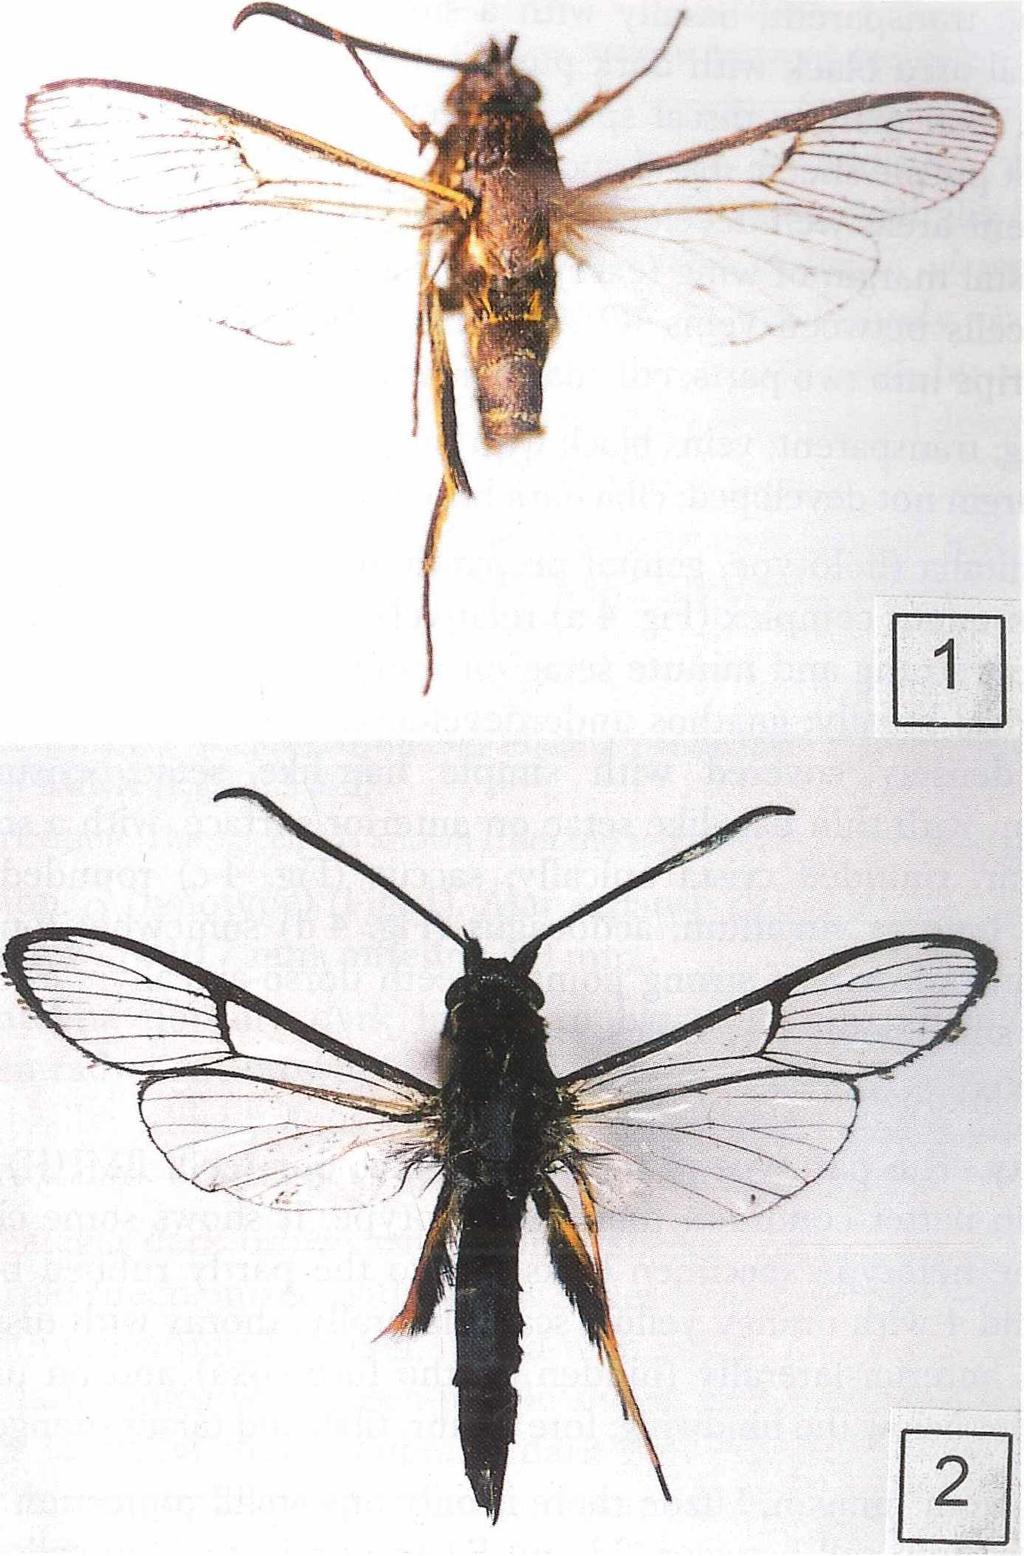 459 Fig. 1: Cyanosesia javana sp. nov., holotype Alar expanse 24.9 mm (BMNH). Fig. 2: Cyanosesia philippina sp. nov., holotype Alar expanse 28.5 mm (BMNH).